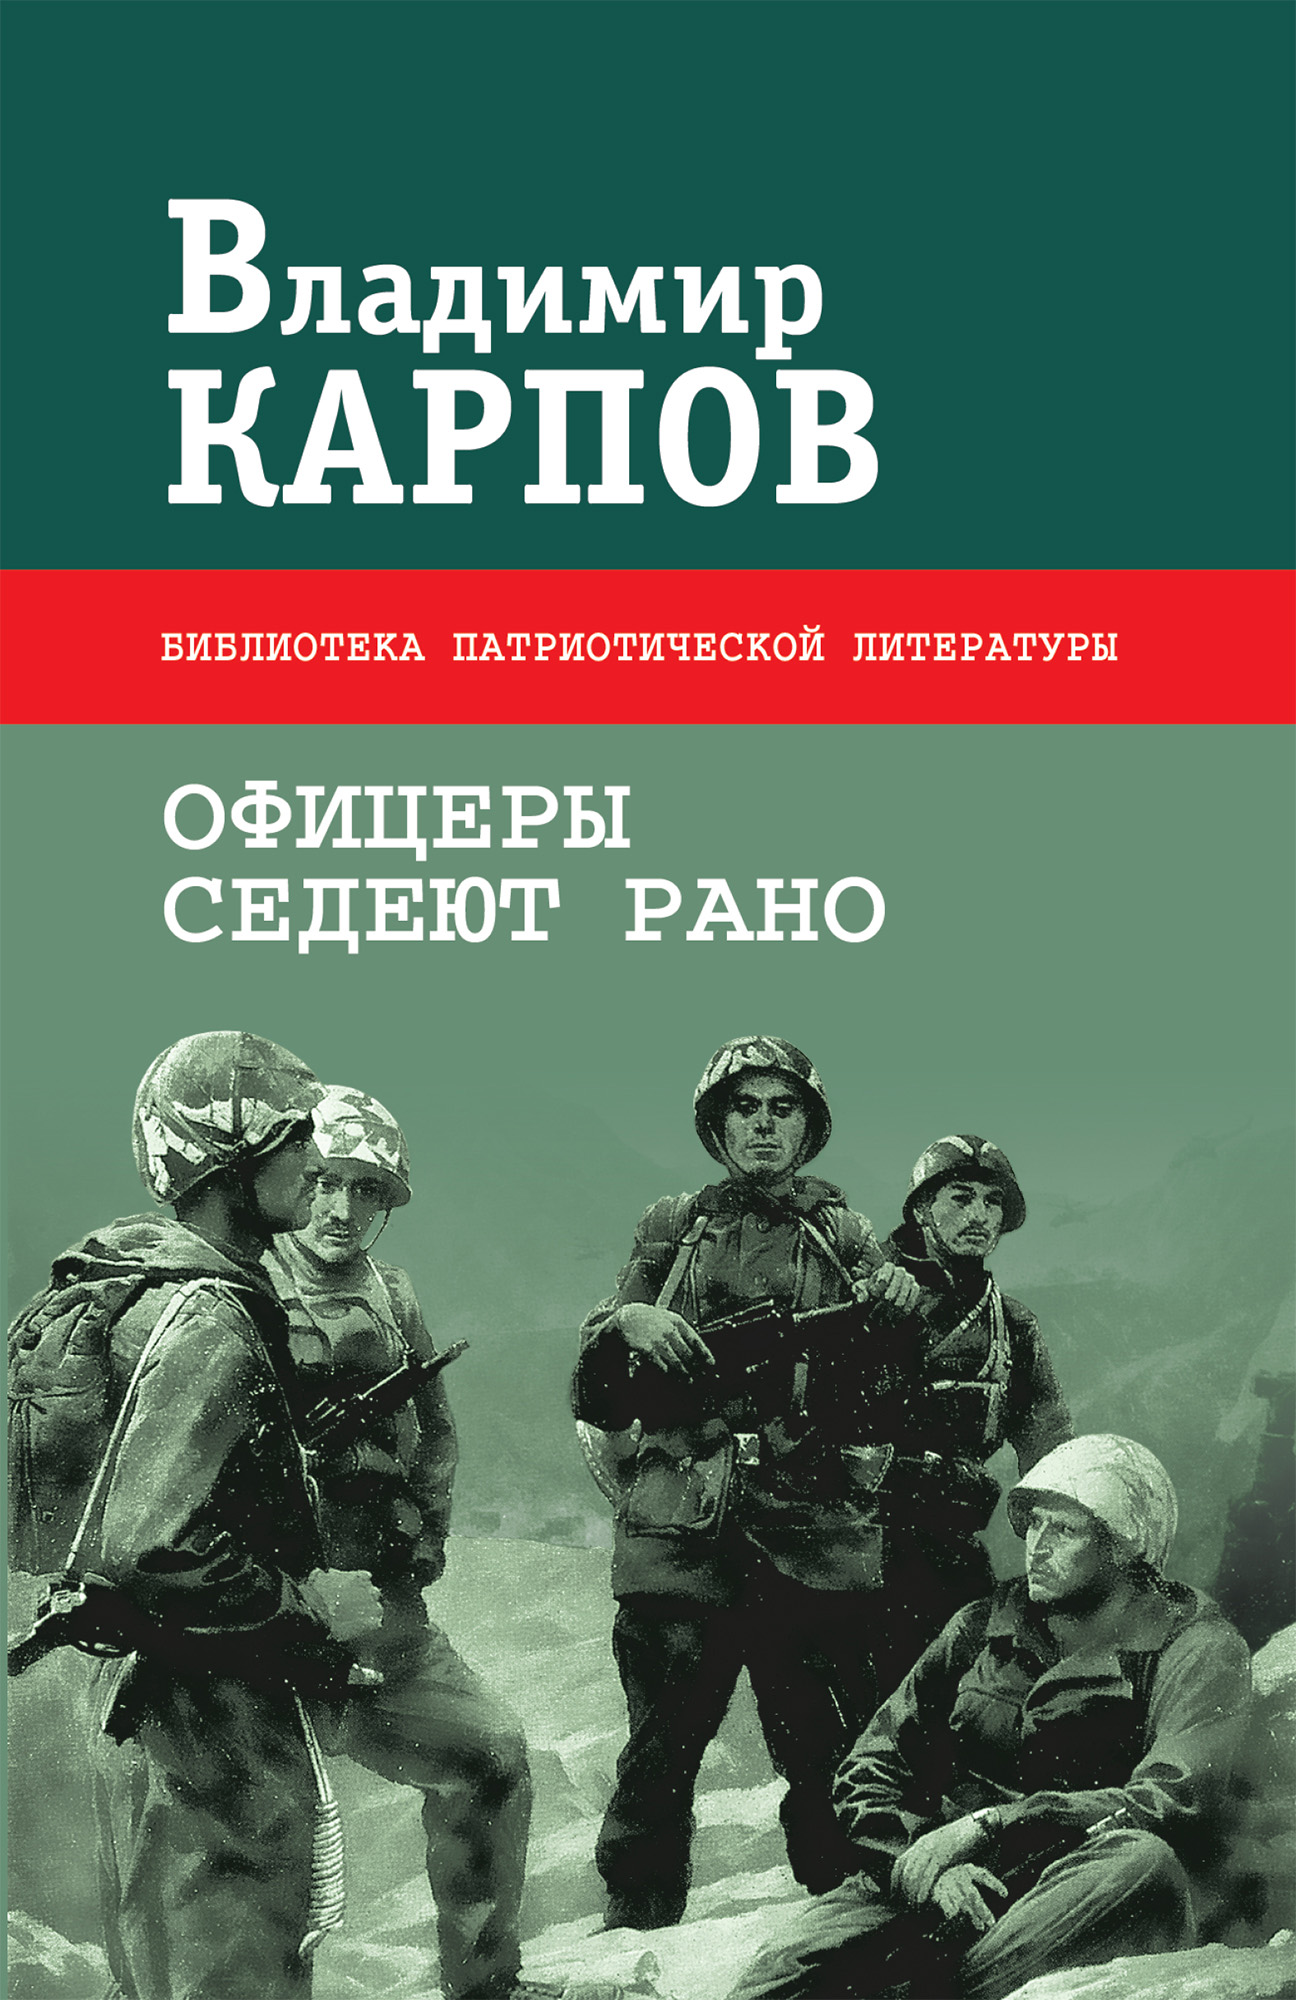 Взять живым аудиокнига. Книги о войне. Книги Владимира Карпова. Военные книги с авторами.